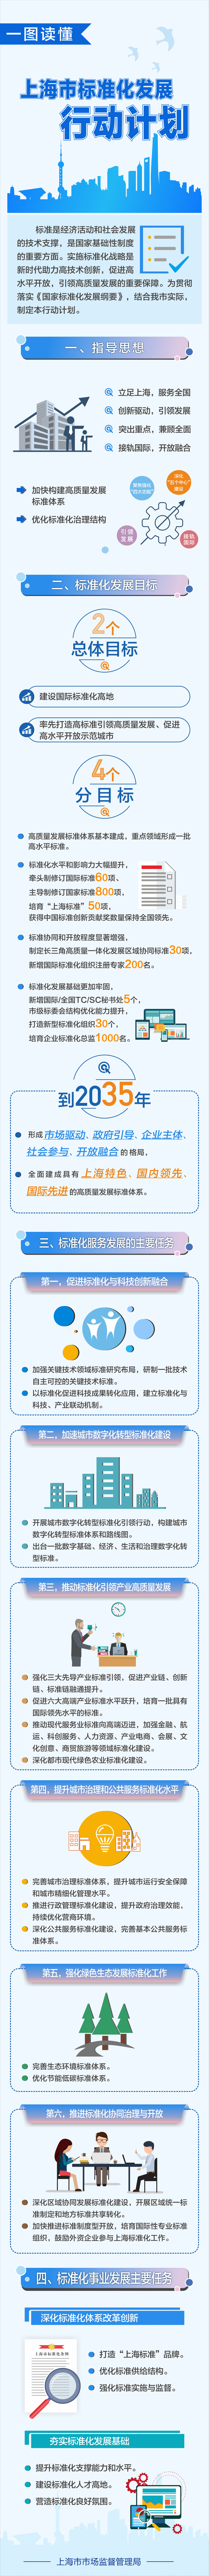 一图读懂《上海市标准化发展行动计划》.jpg